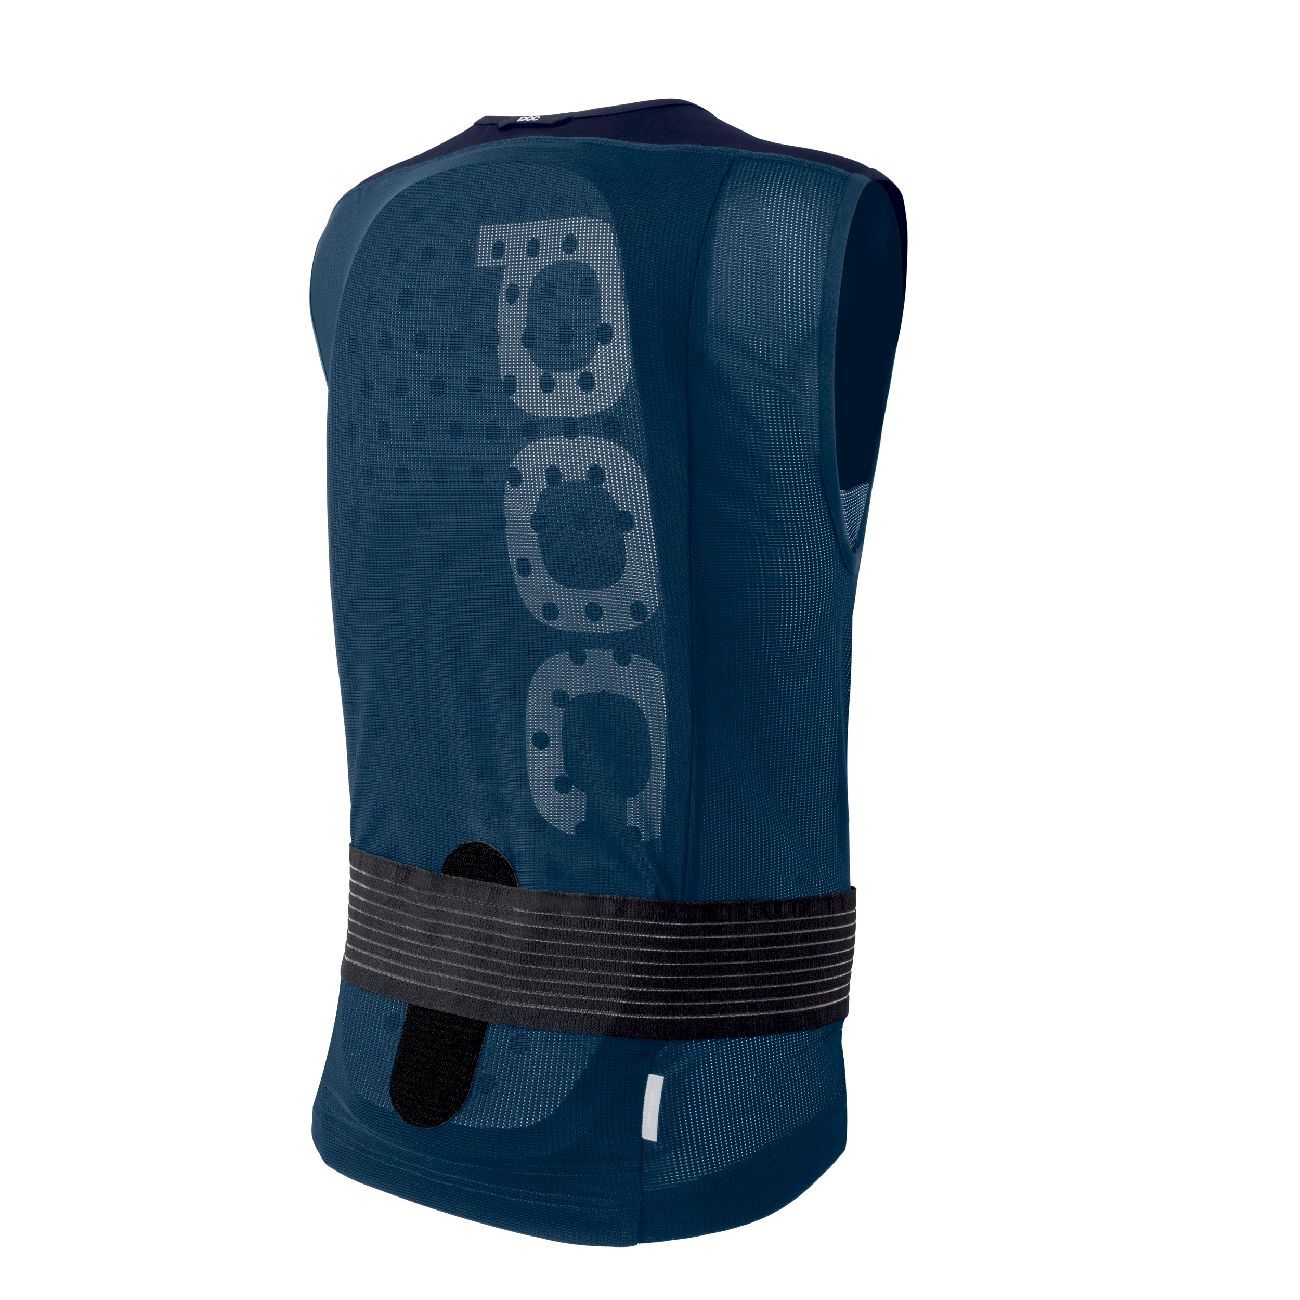 Poc VPD Air Vest Jr - Back protector